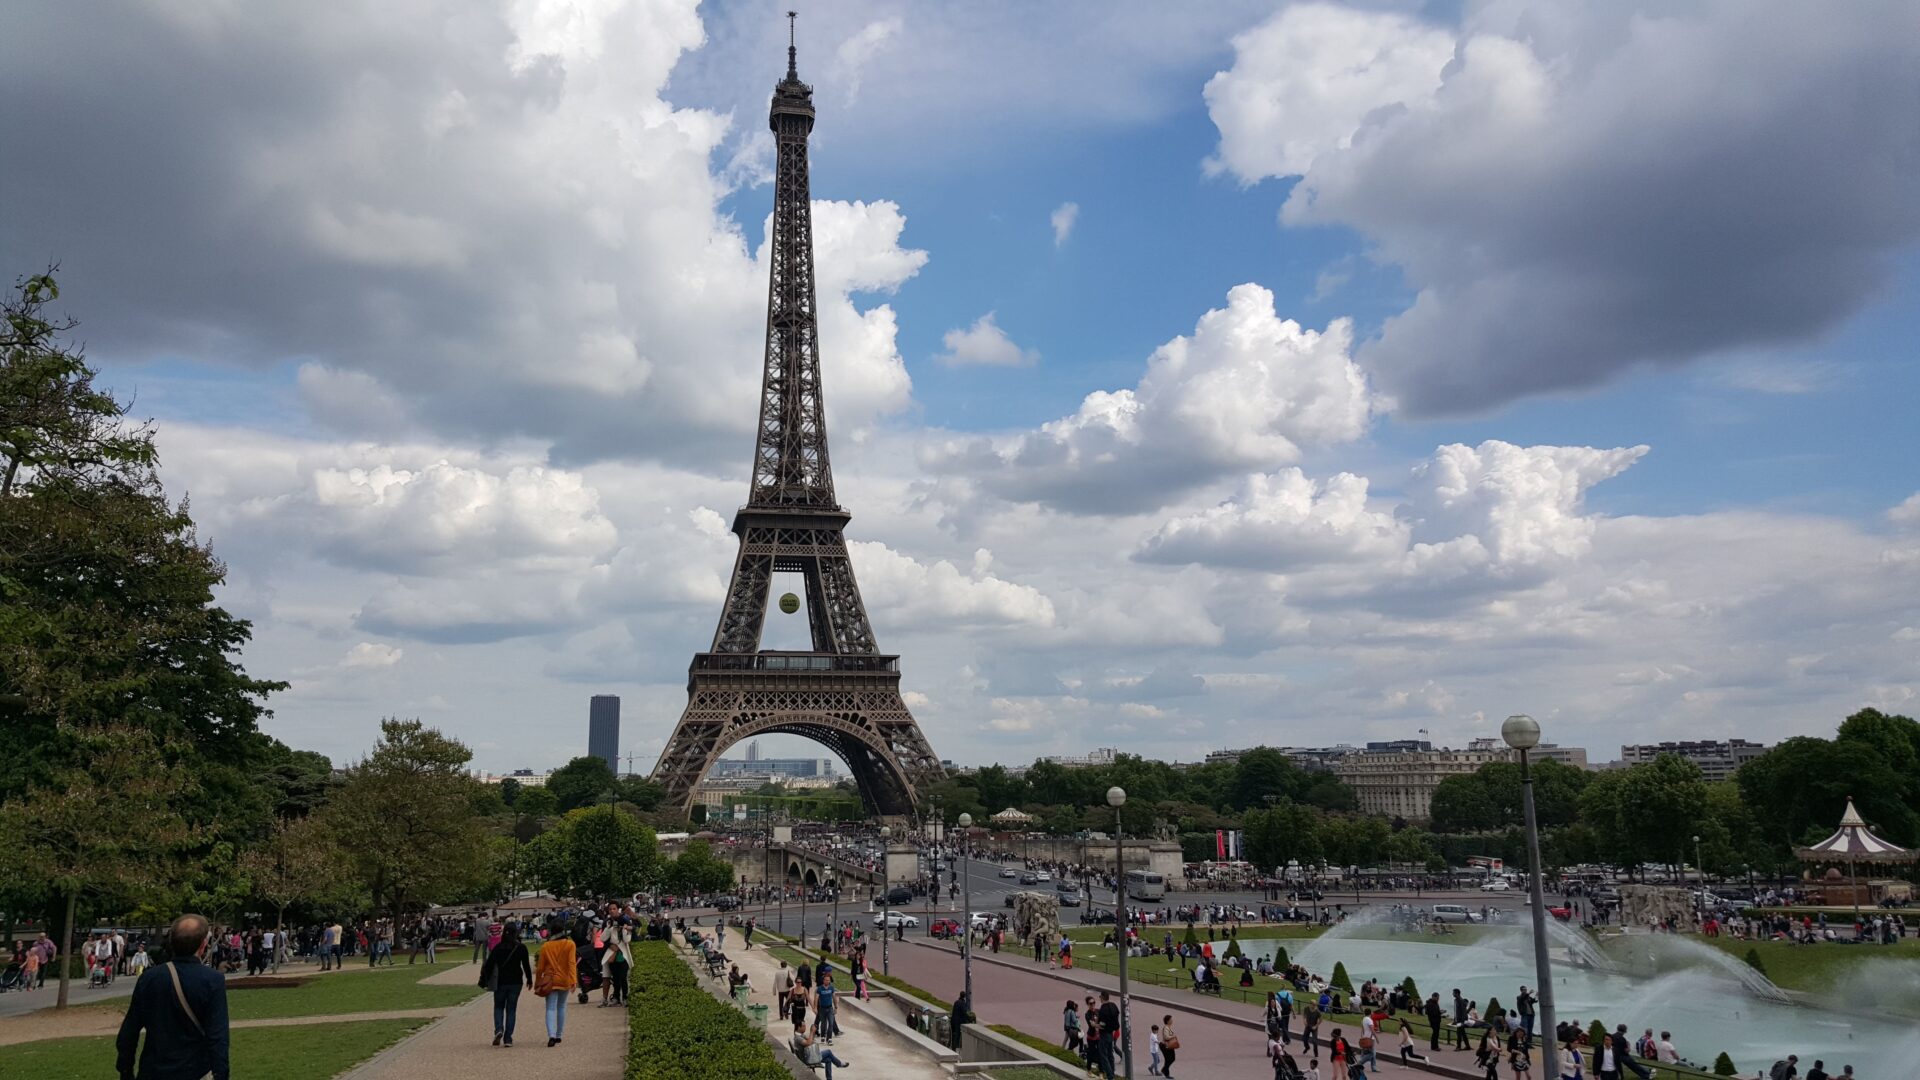 パリのエッフェル塔。1889年のパリ万国博覧会に際して、ギュスターヴ・エッフェルにより建設された。